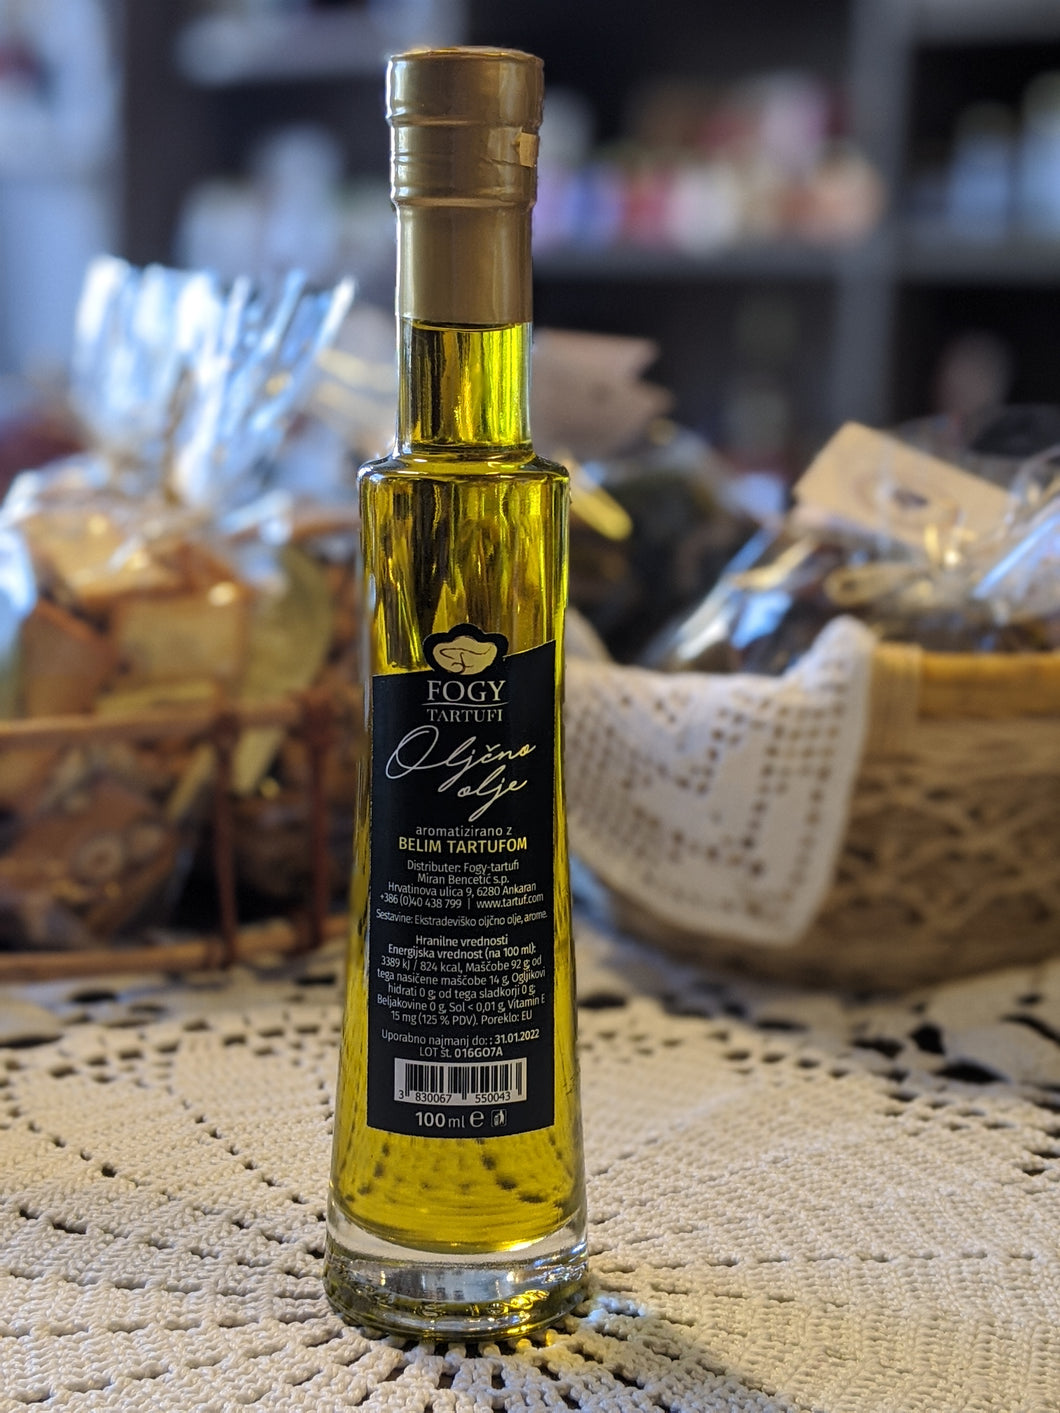 Ekstradeviško oljčno olje aromatizirano z belimi tartufi 250ml, 100ml